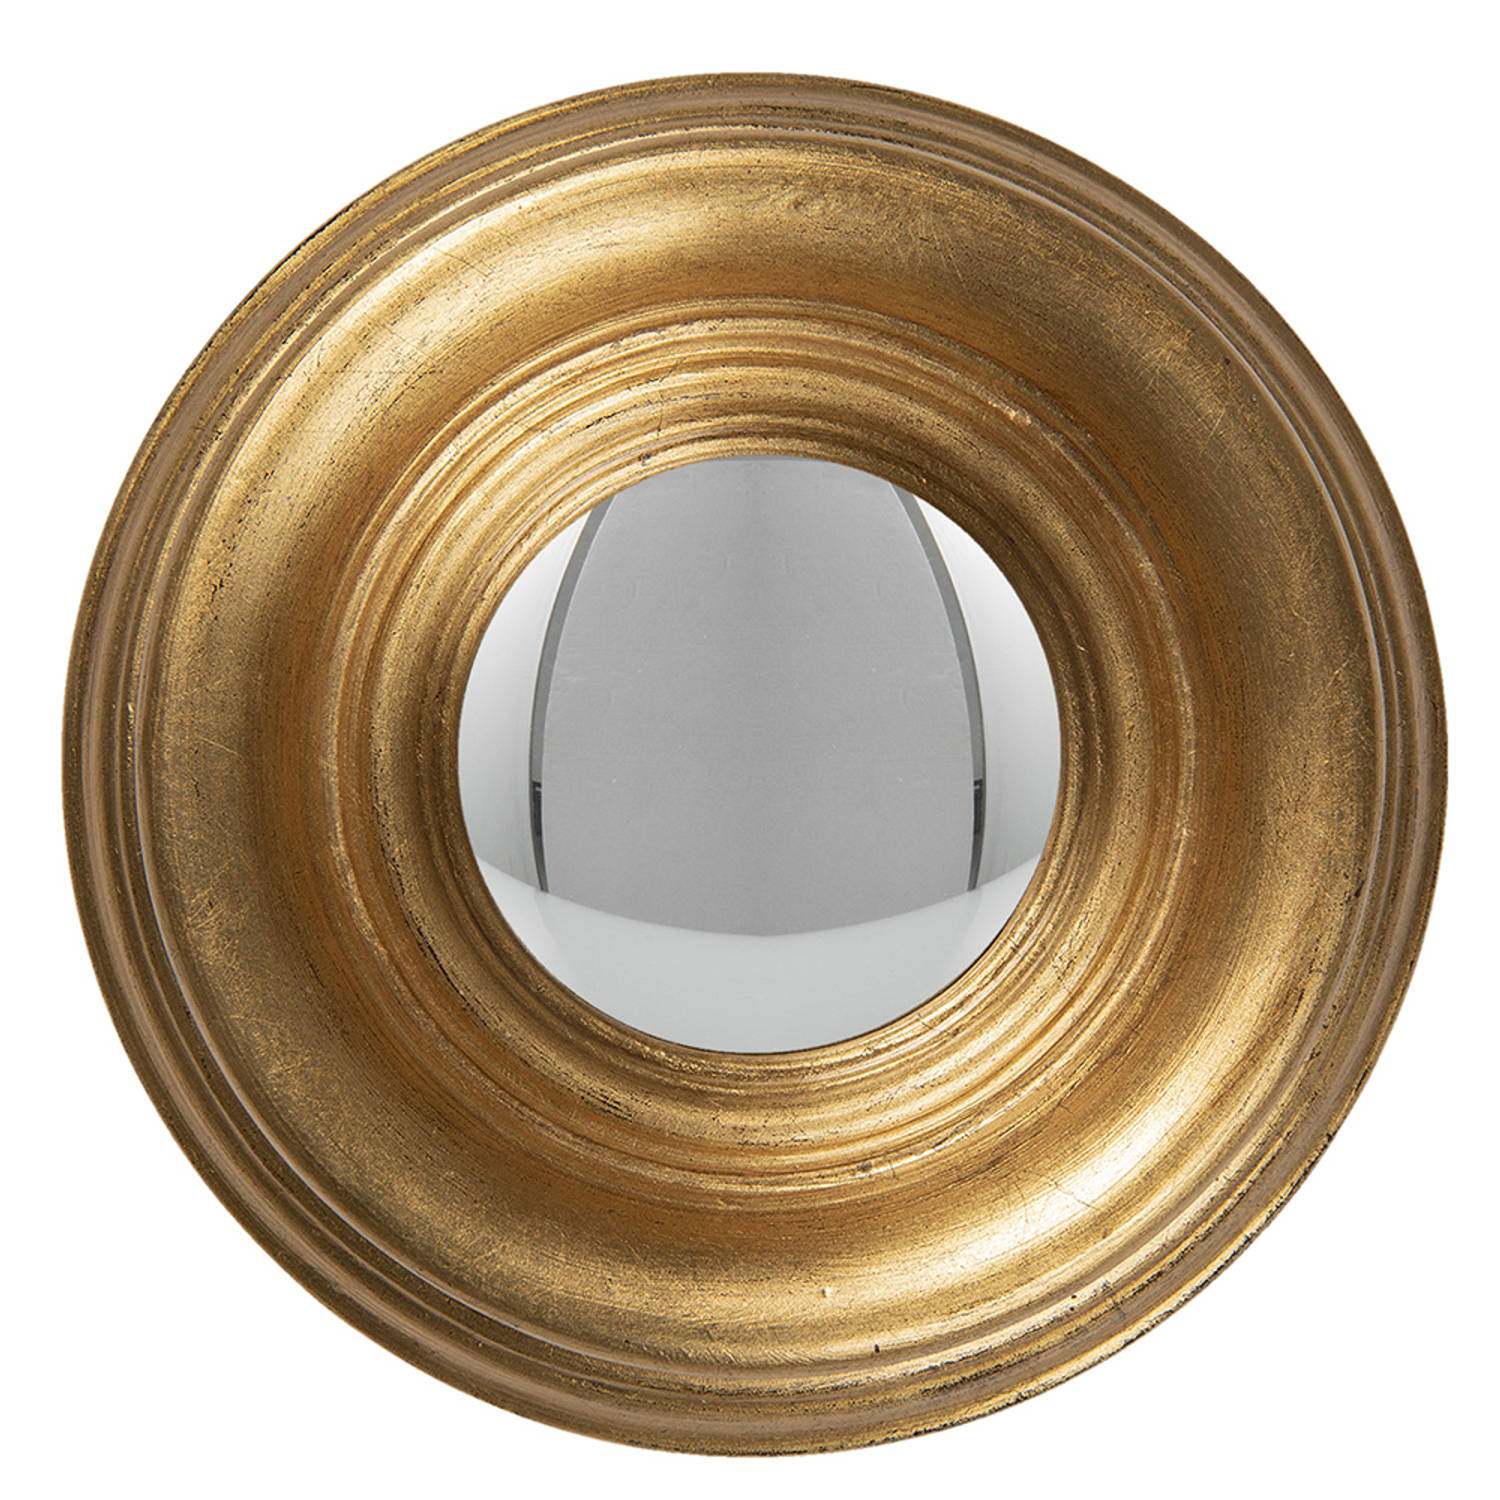 HAES DECO Bolle ronde Spiegel Goudkleurig Ø 21x4 cm Hout-Glas Wandspiegel, Spiegel rond, Convex Glas